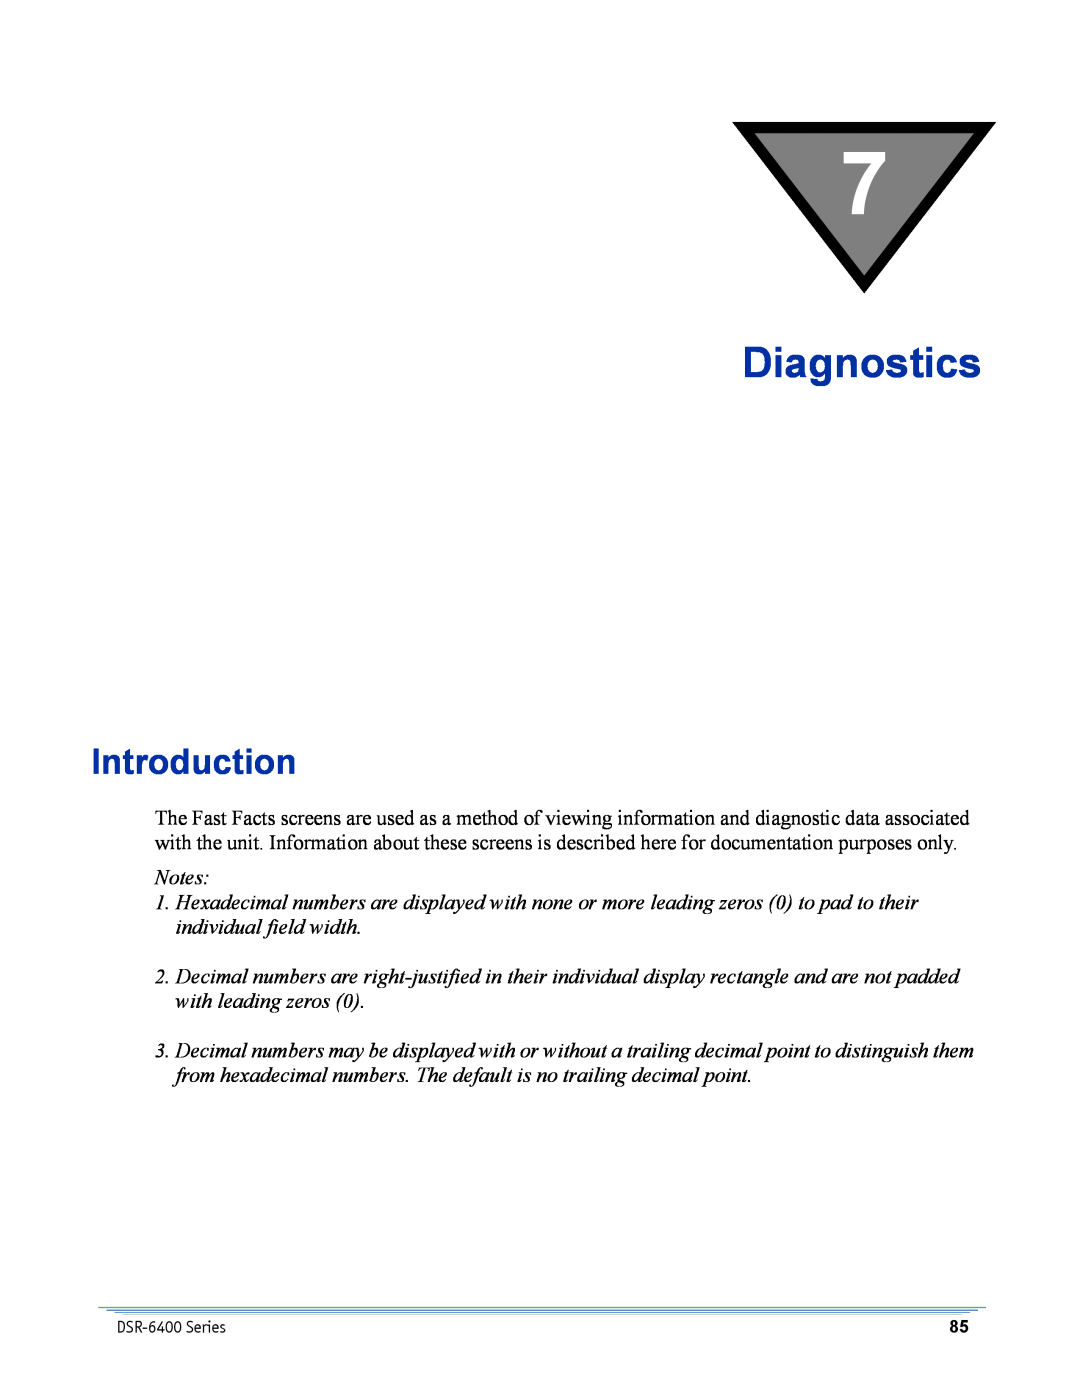 Motorola DSR-6400 manual Diagnostics, Introduction 